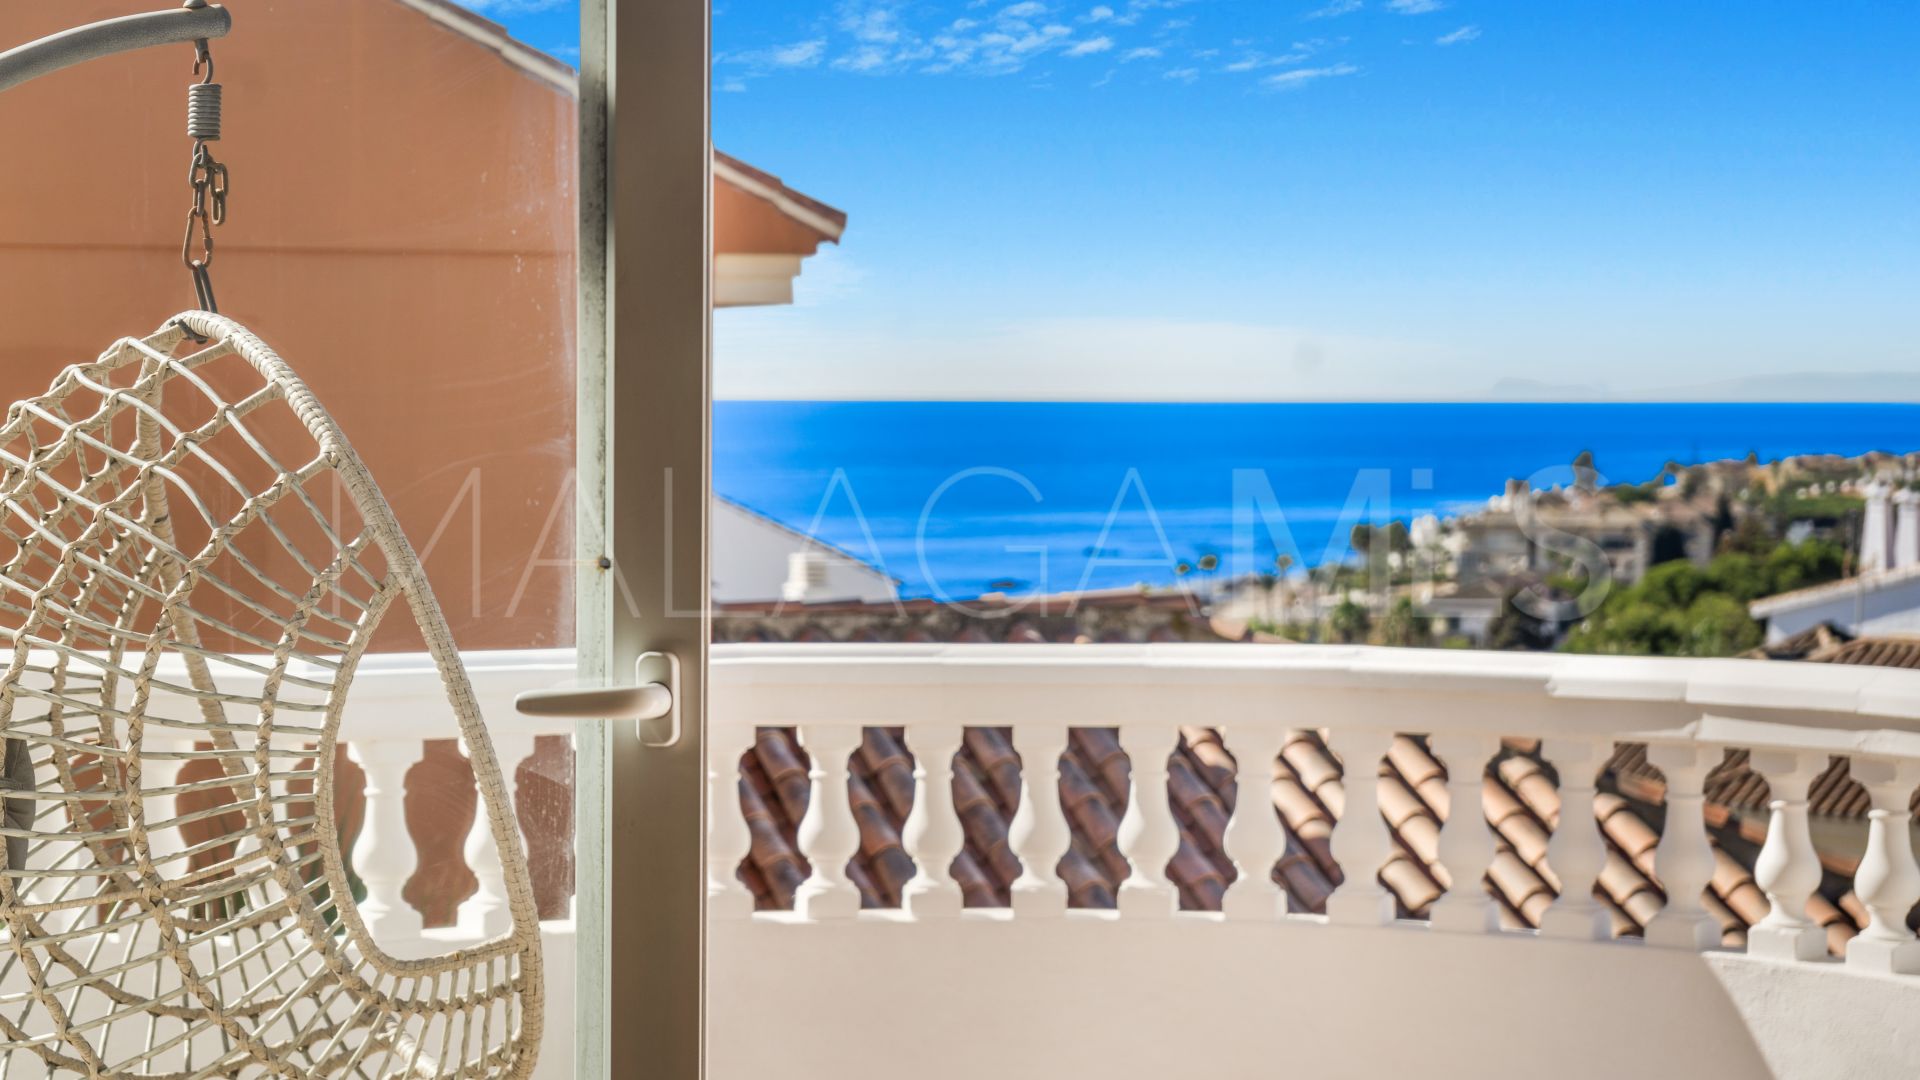 For sale Riviera del Sol villa with 4 bedrooms